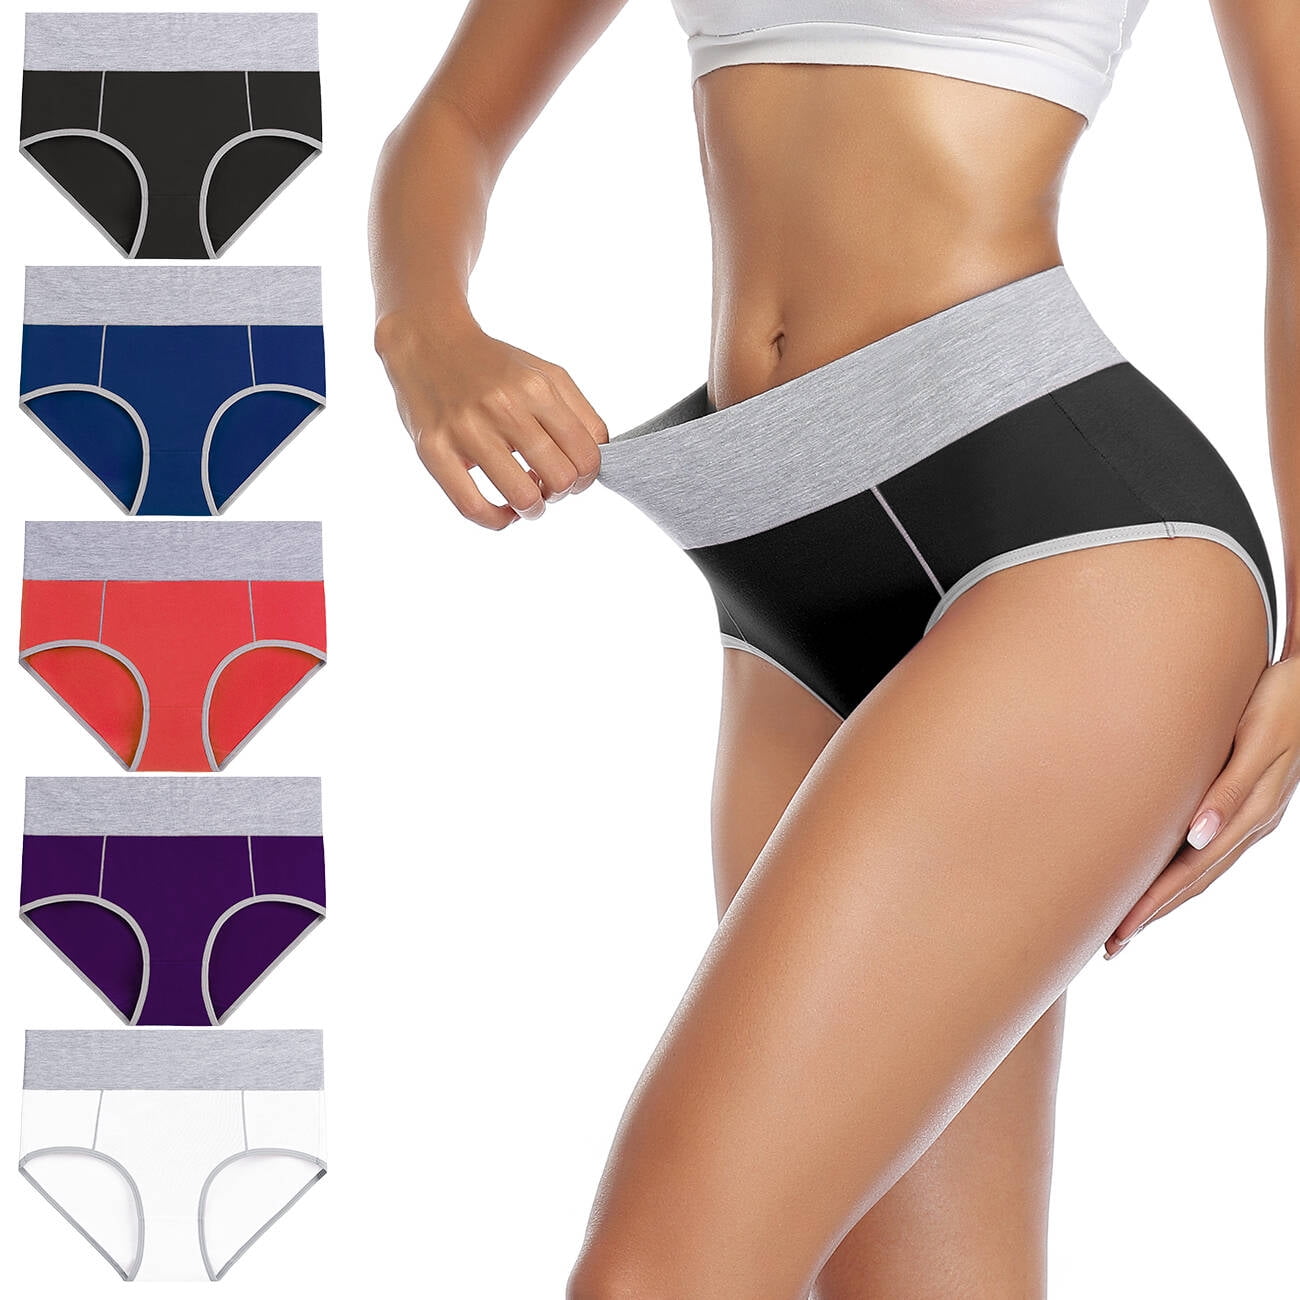 Tommy Hilfiger Women's Underwear Cotton Brief Panties, 5